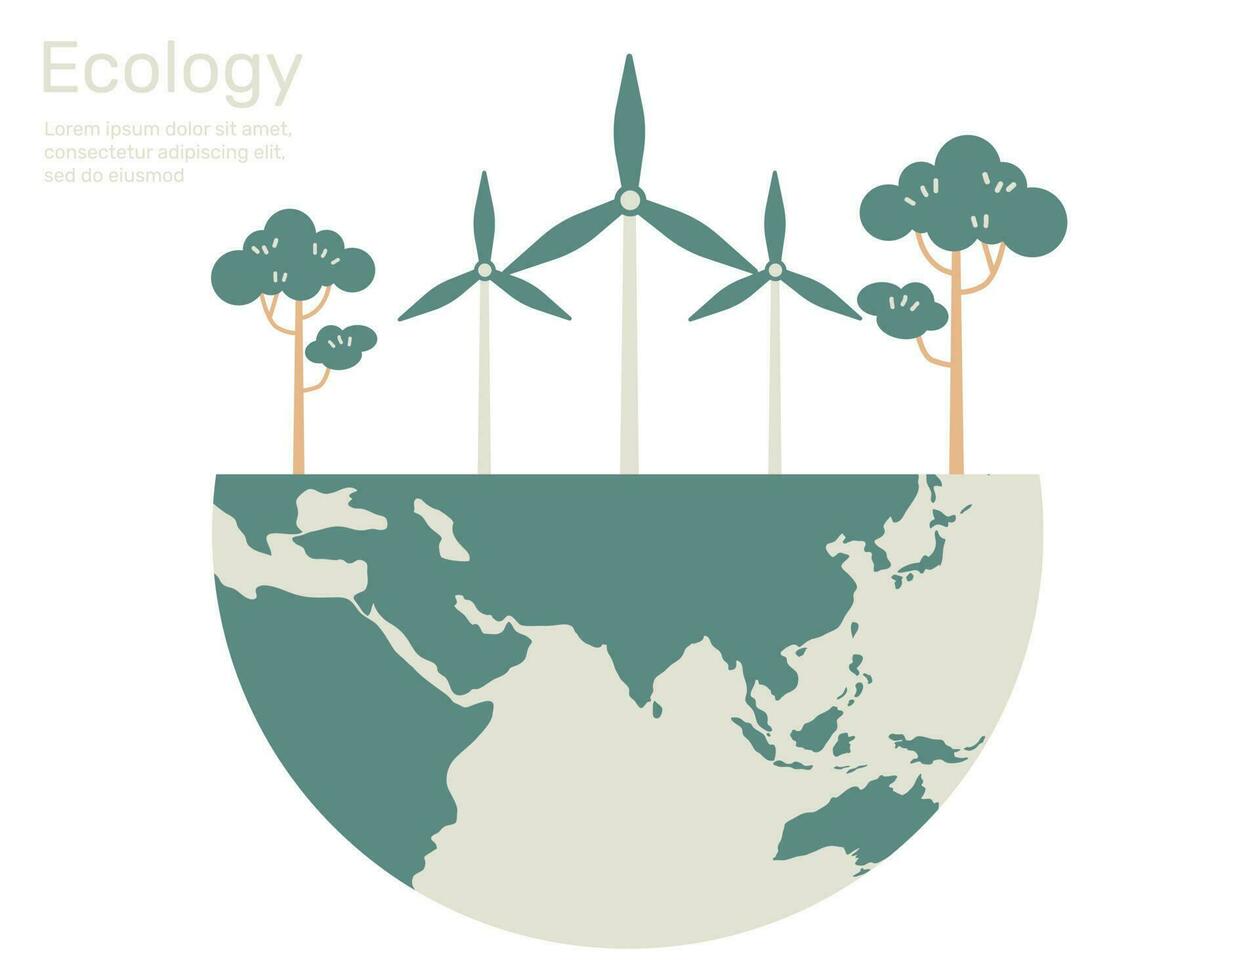 vind turbin och träd på jorden, grön stad liv ekologi begrepp. vektor design illustration.